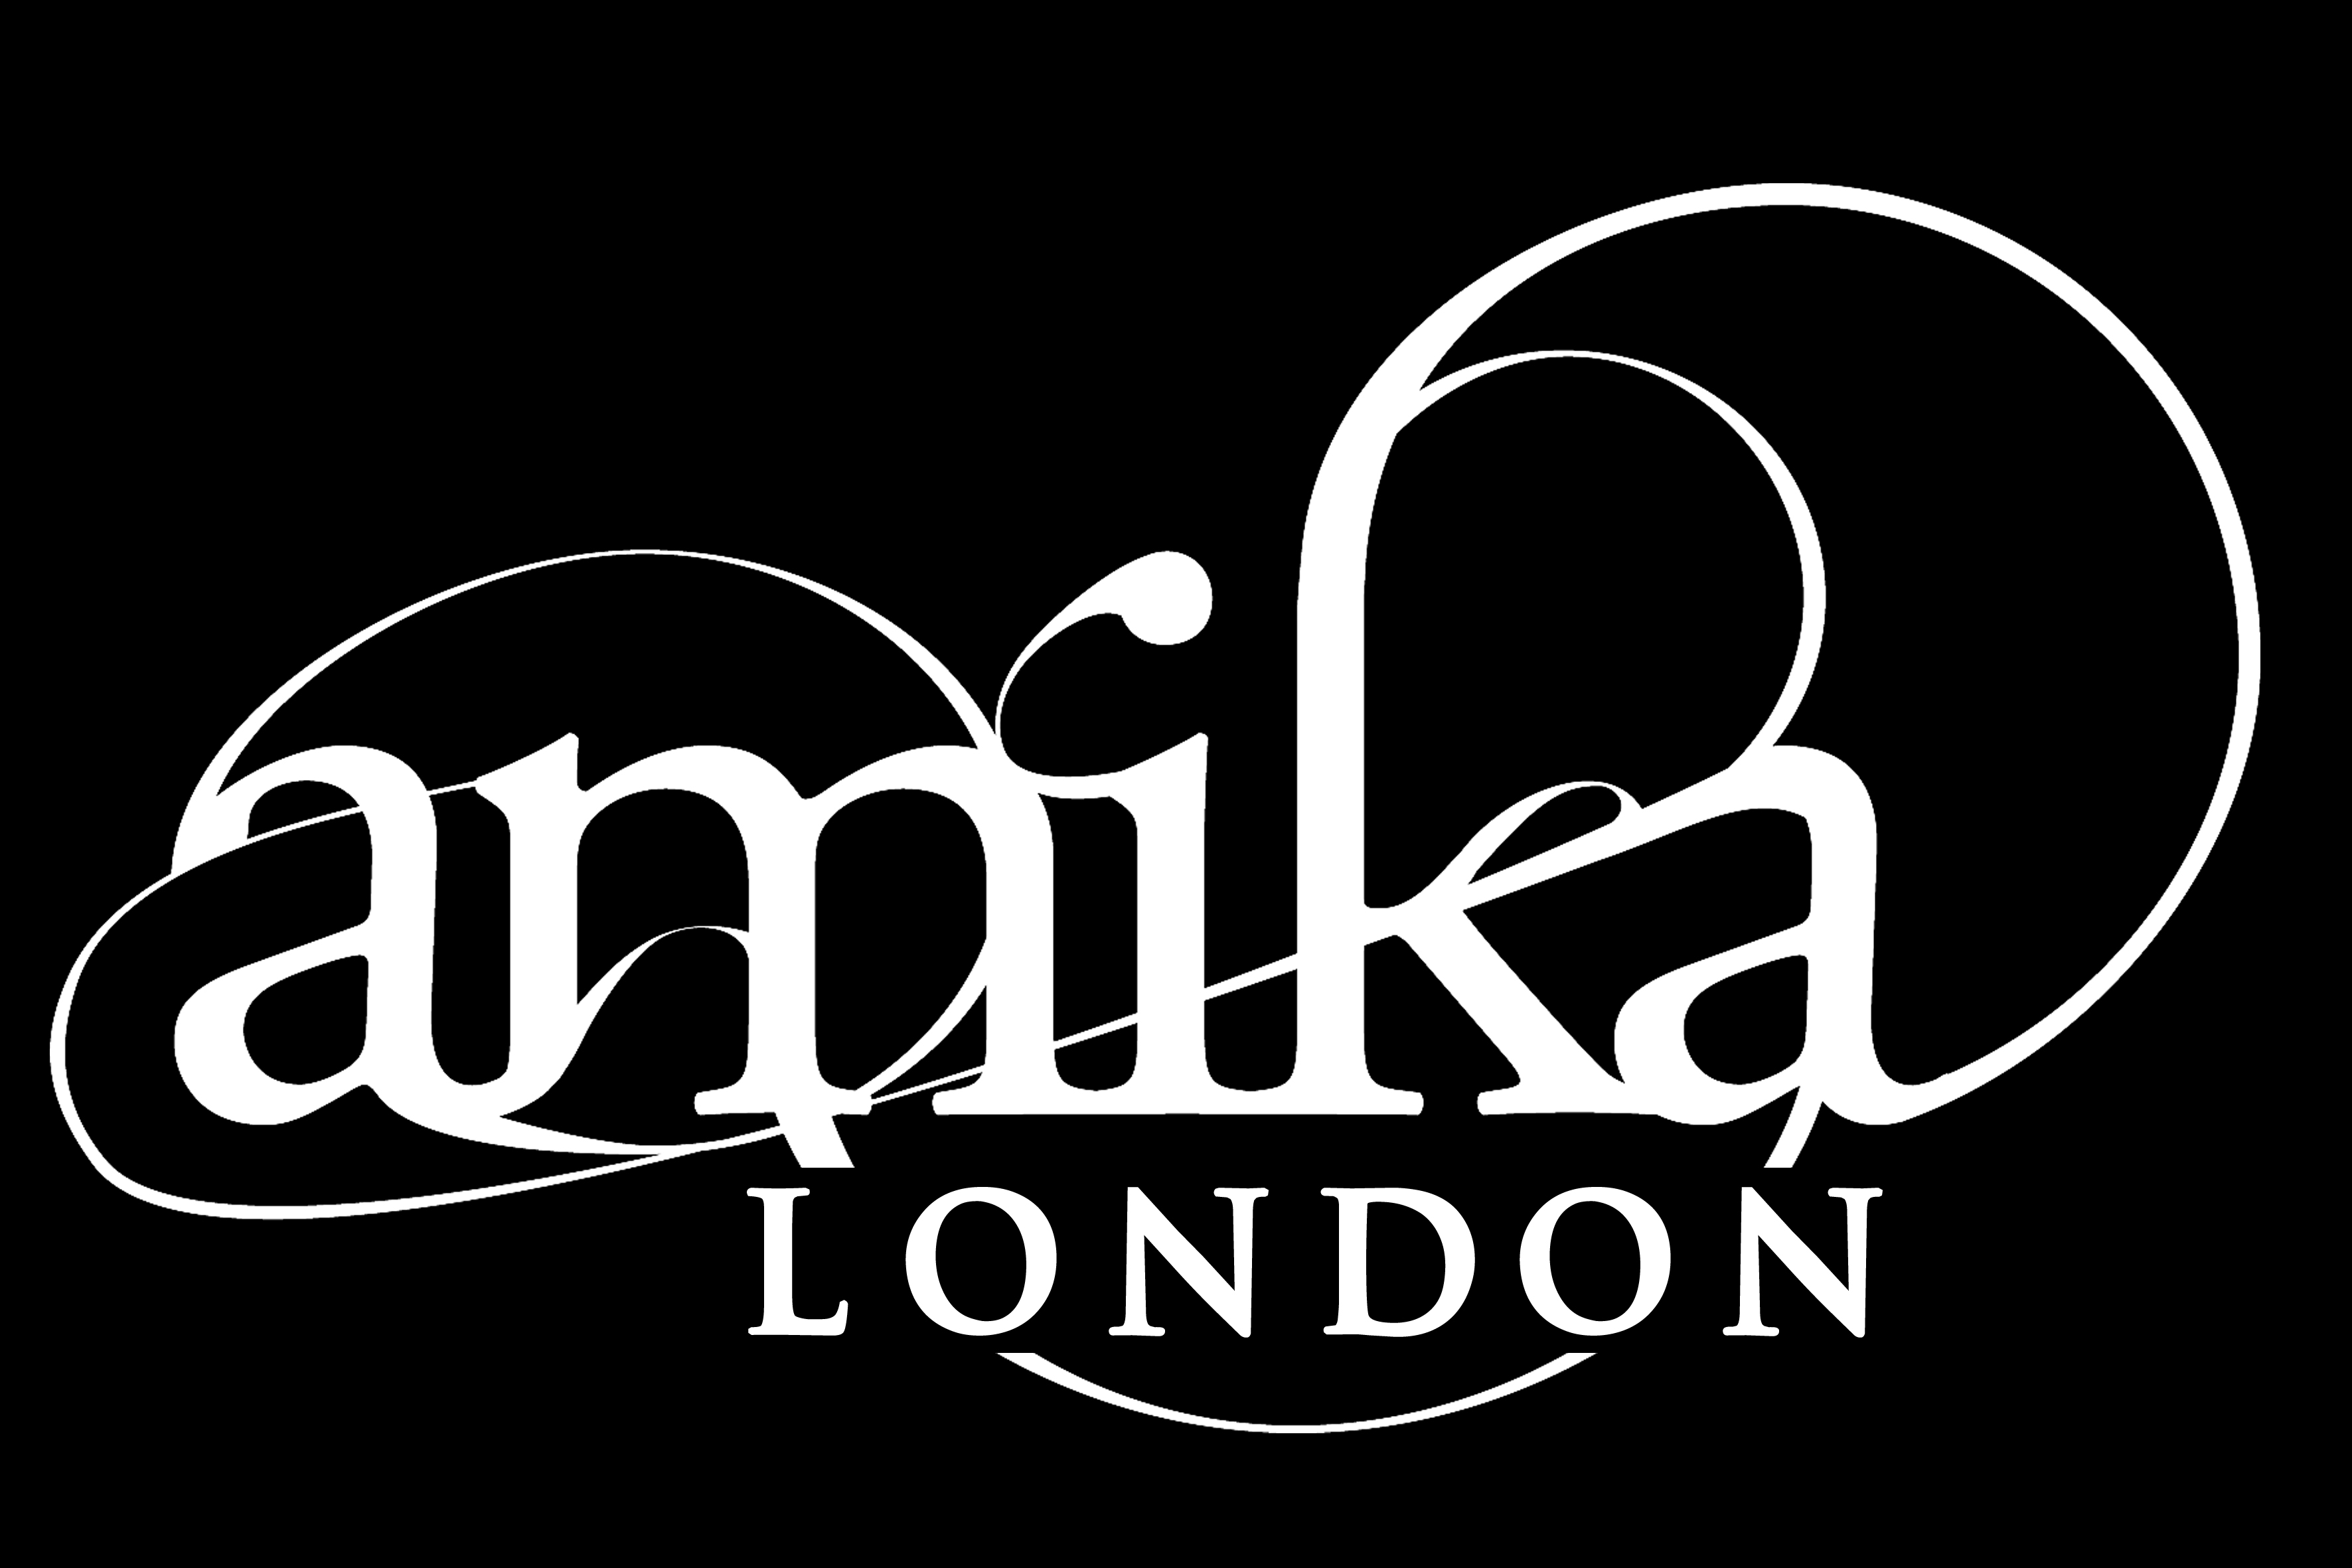 Amika logo